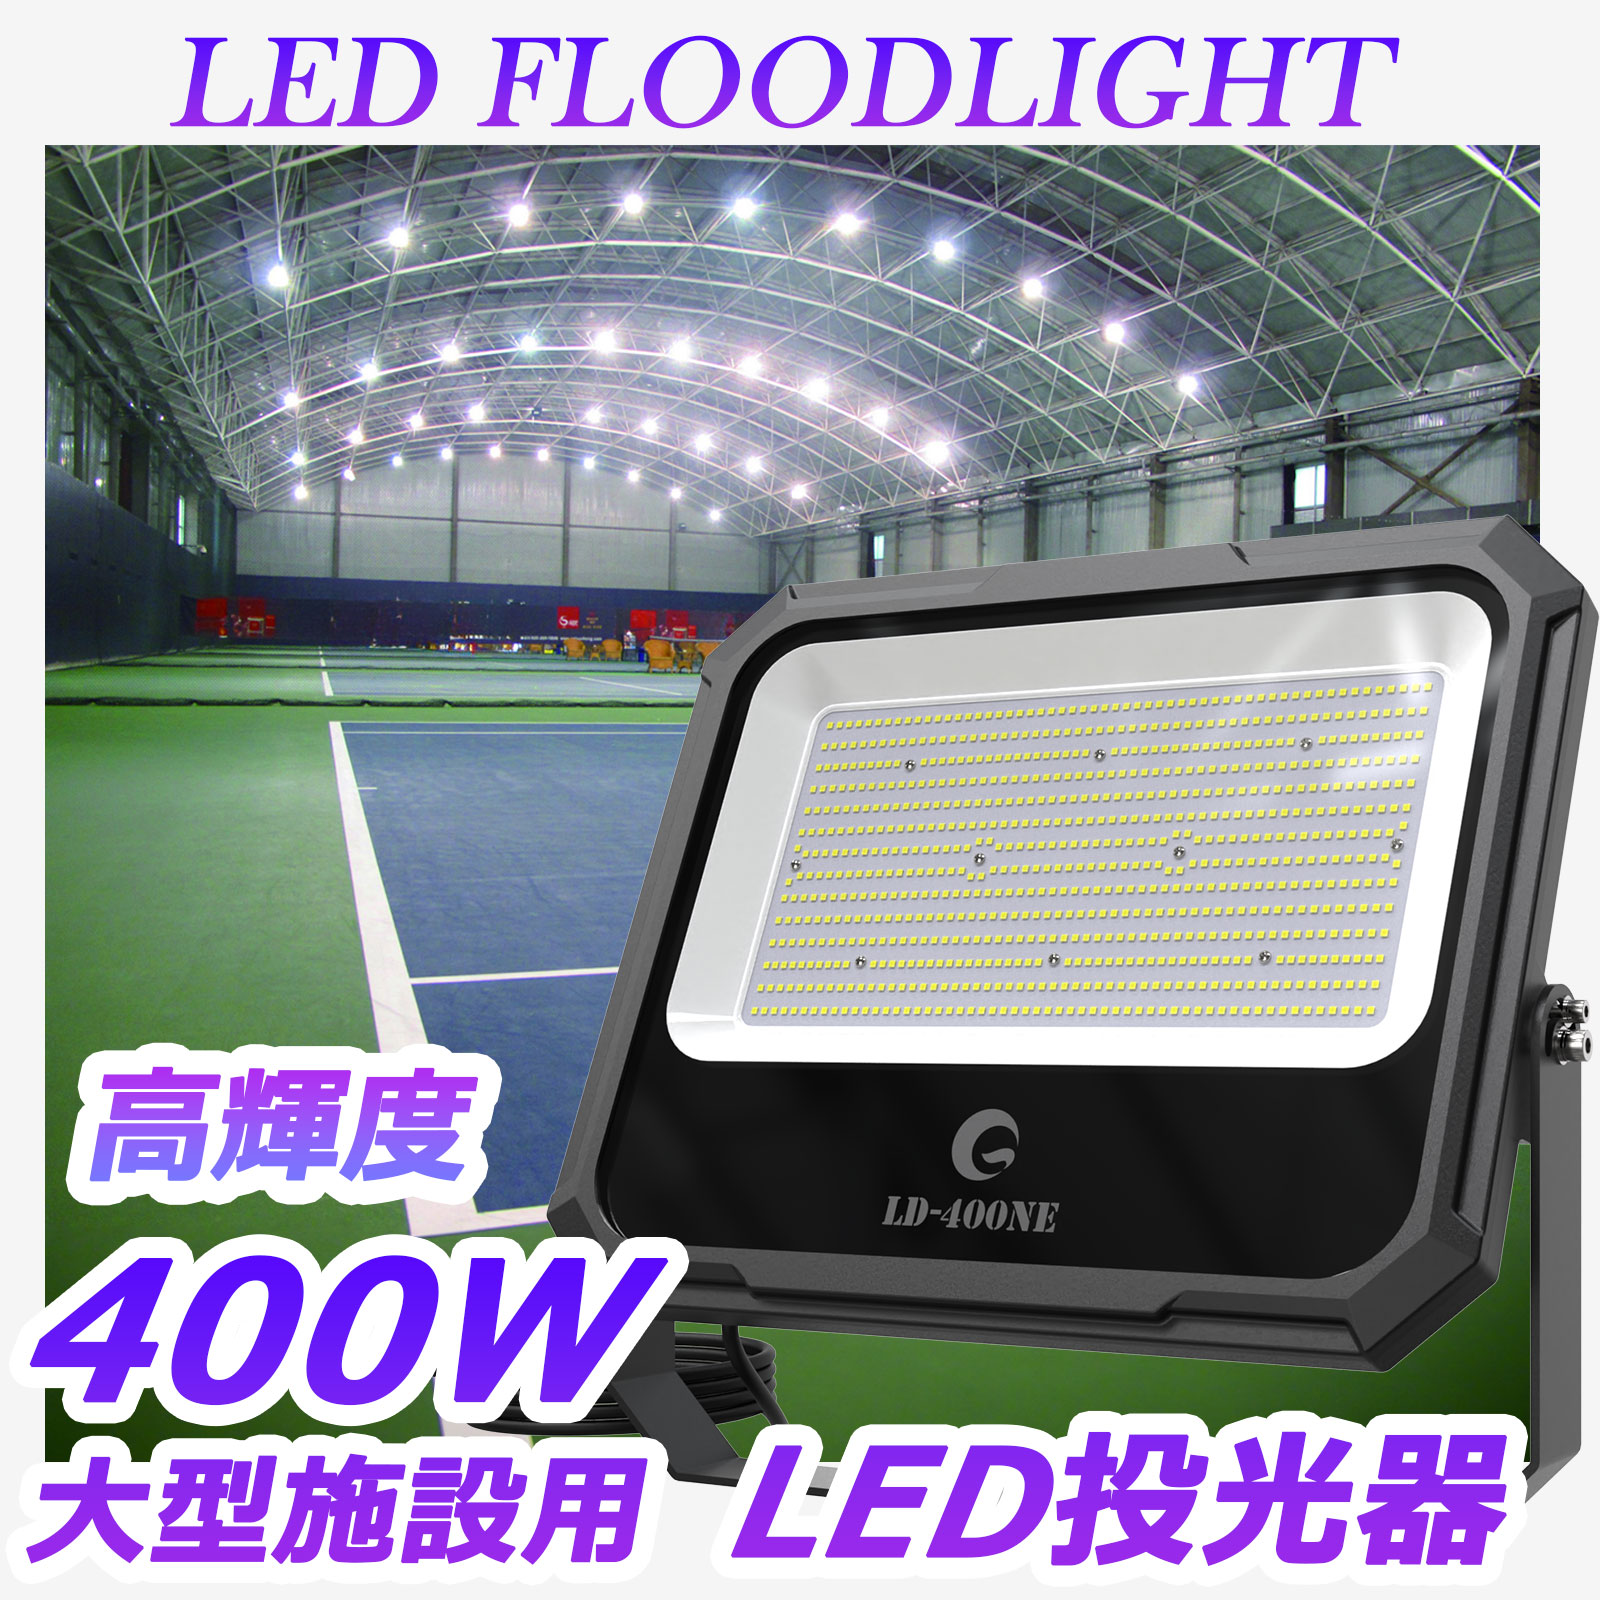 グッドグッズ 400w LED投光器 水銀灯4000w相当 薄型 40000lm 作業灯 LEDライト 看板照明 駐車場灯 LED照明 屋外用照明 防雨 スポットライト 高輝度 LD-408A - 5